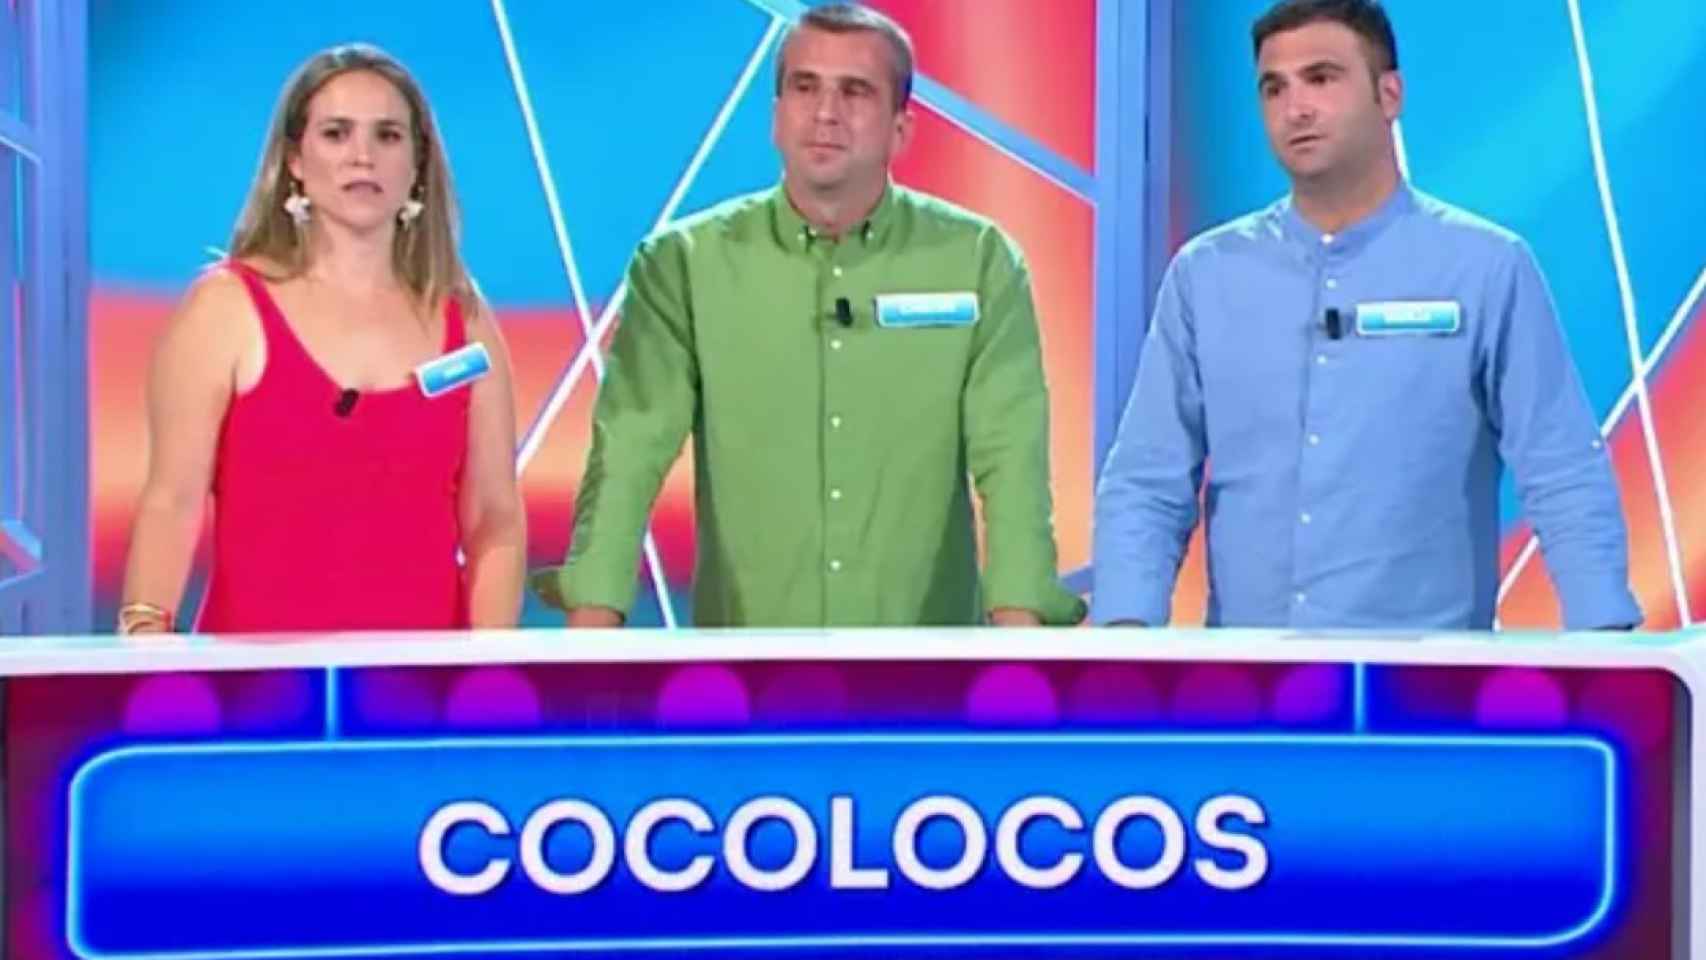 Los Cocolocos durante el concurso.